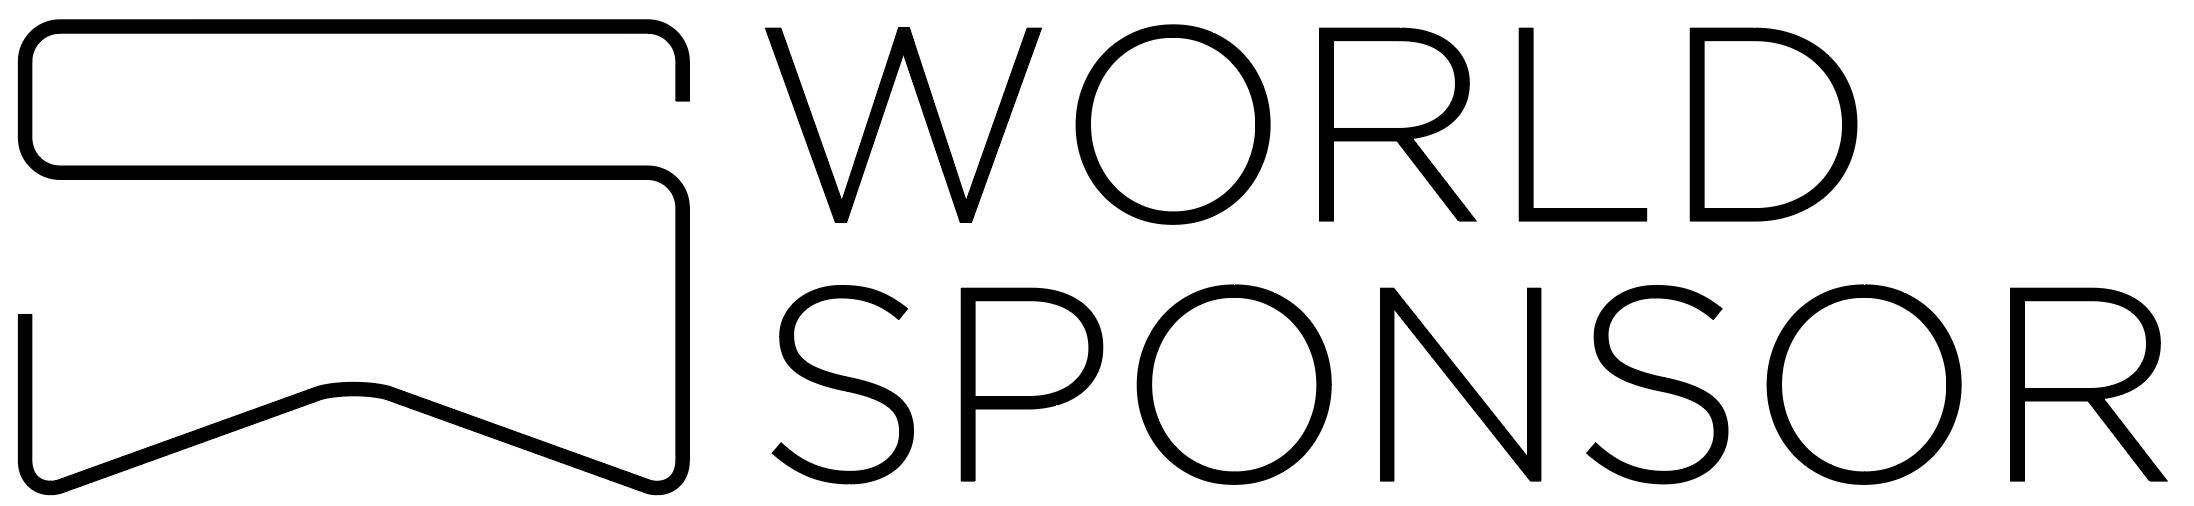 World Sponsor